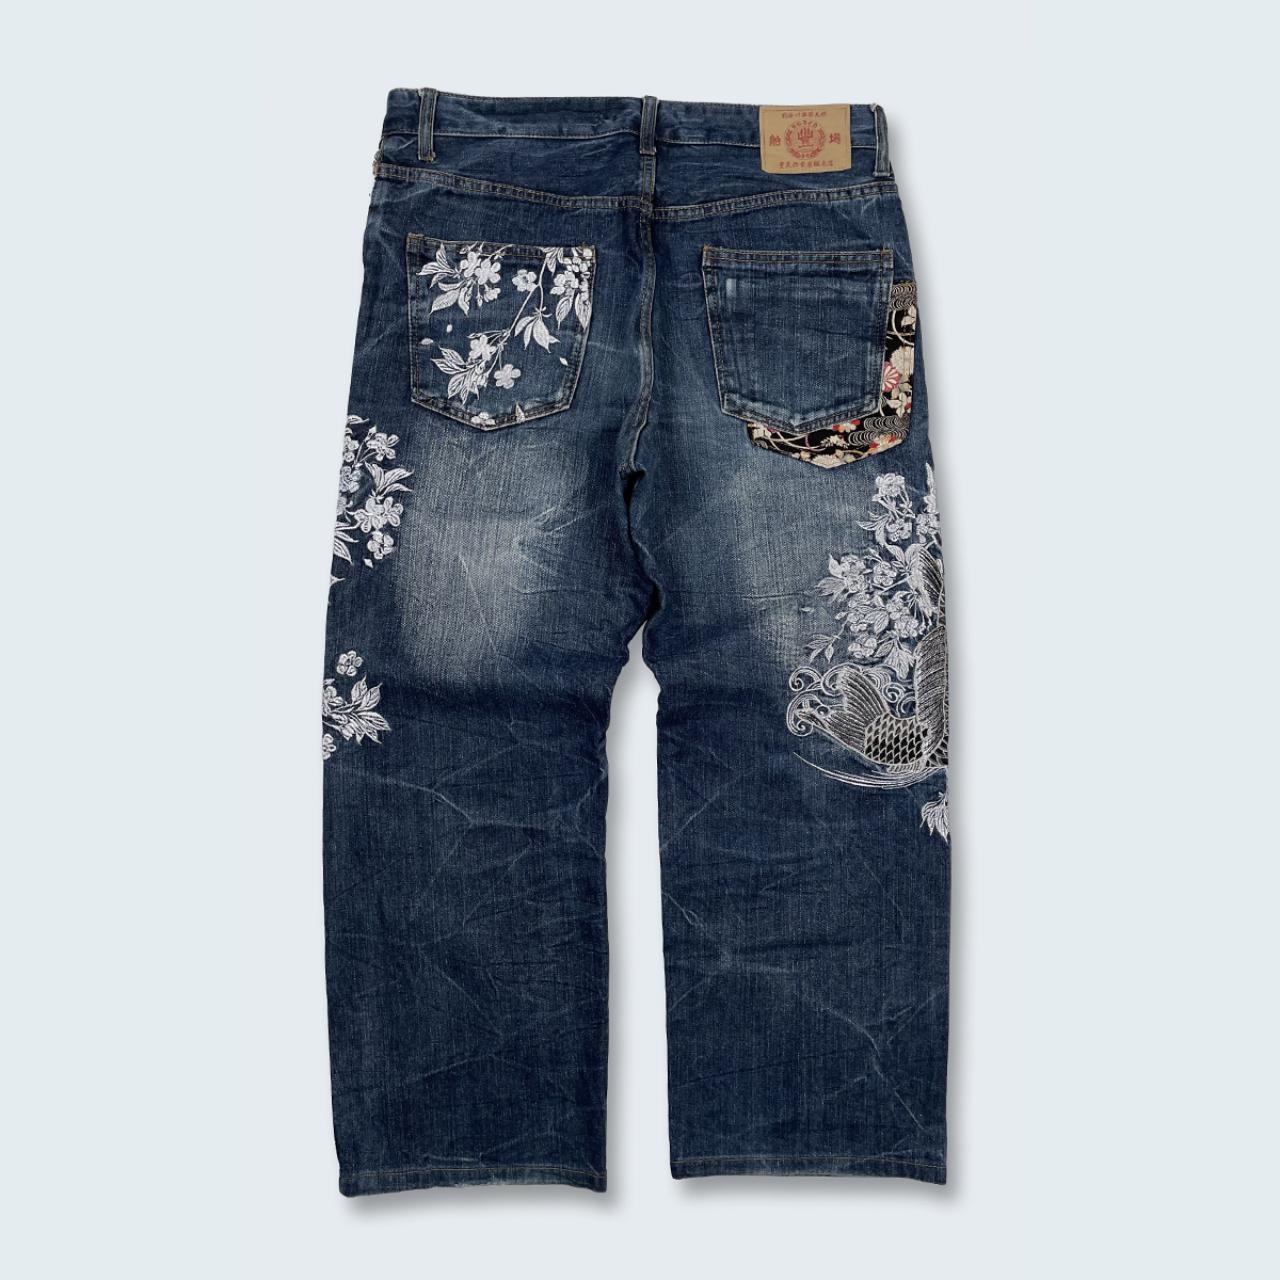 Authentic Vintage Japanese Denim Jeans  (34")